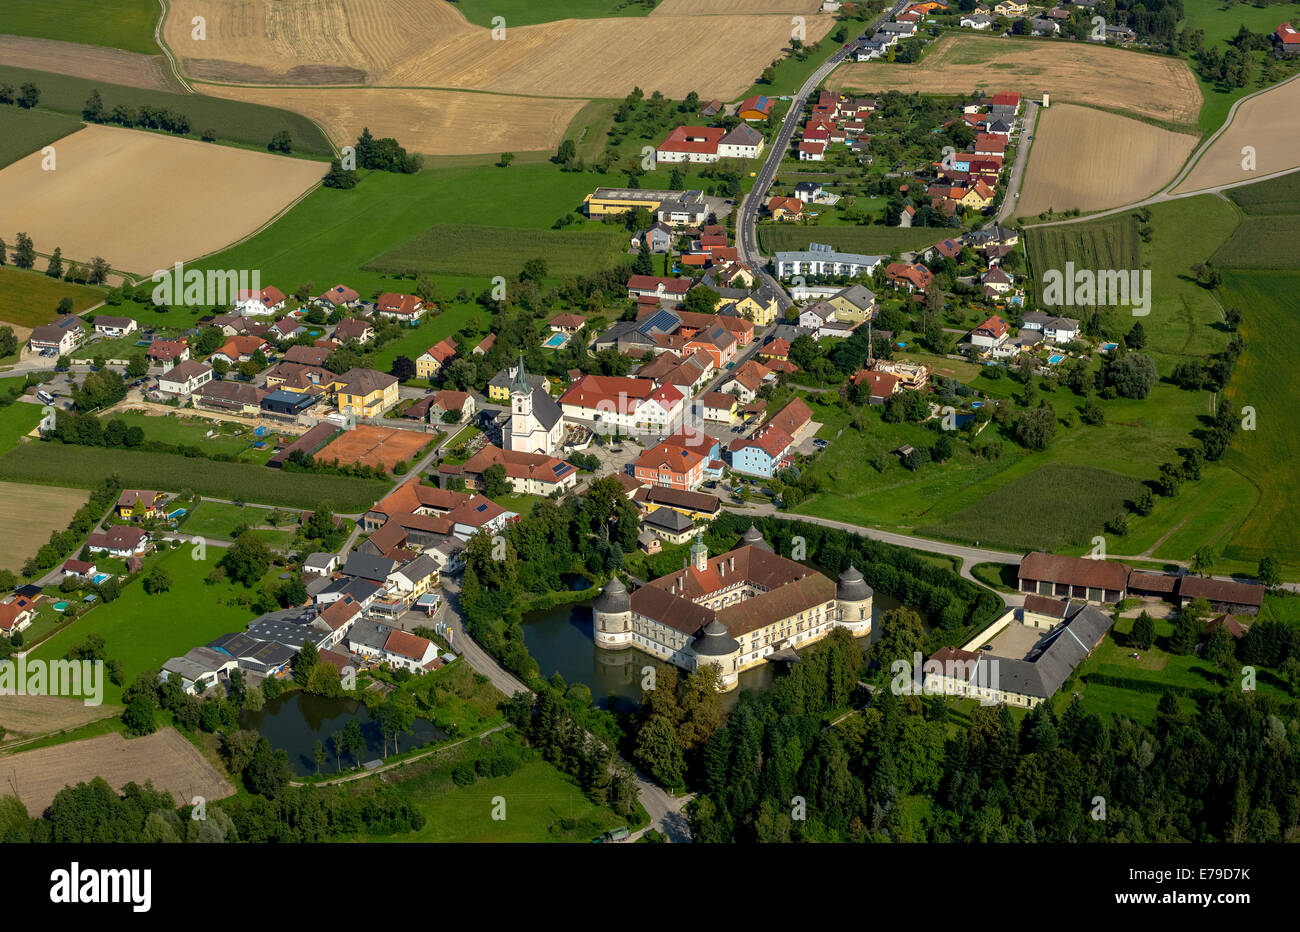 Aerial view, Schloss Aistersheim, moated castle from the late Renaissance, Aistersheim, Upper Austria, Austria Stock Photo